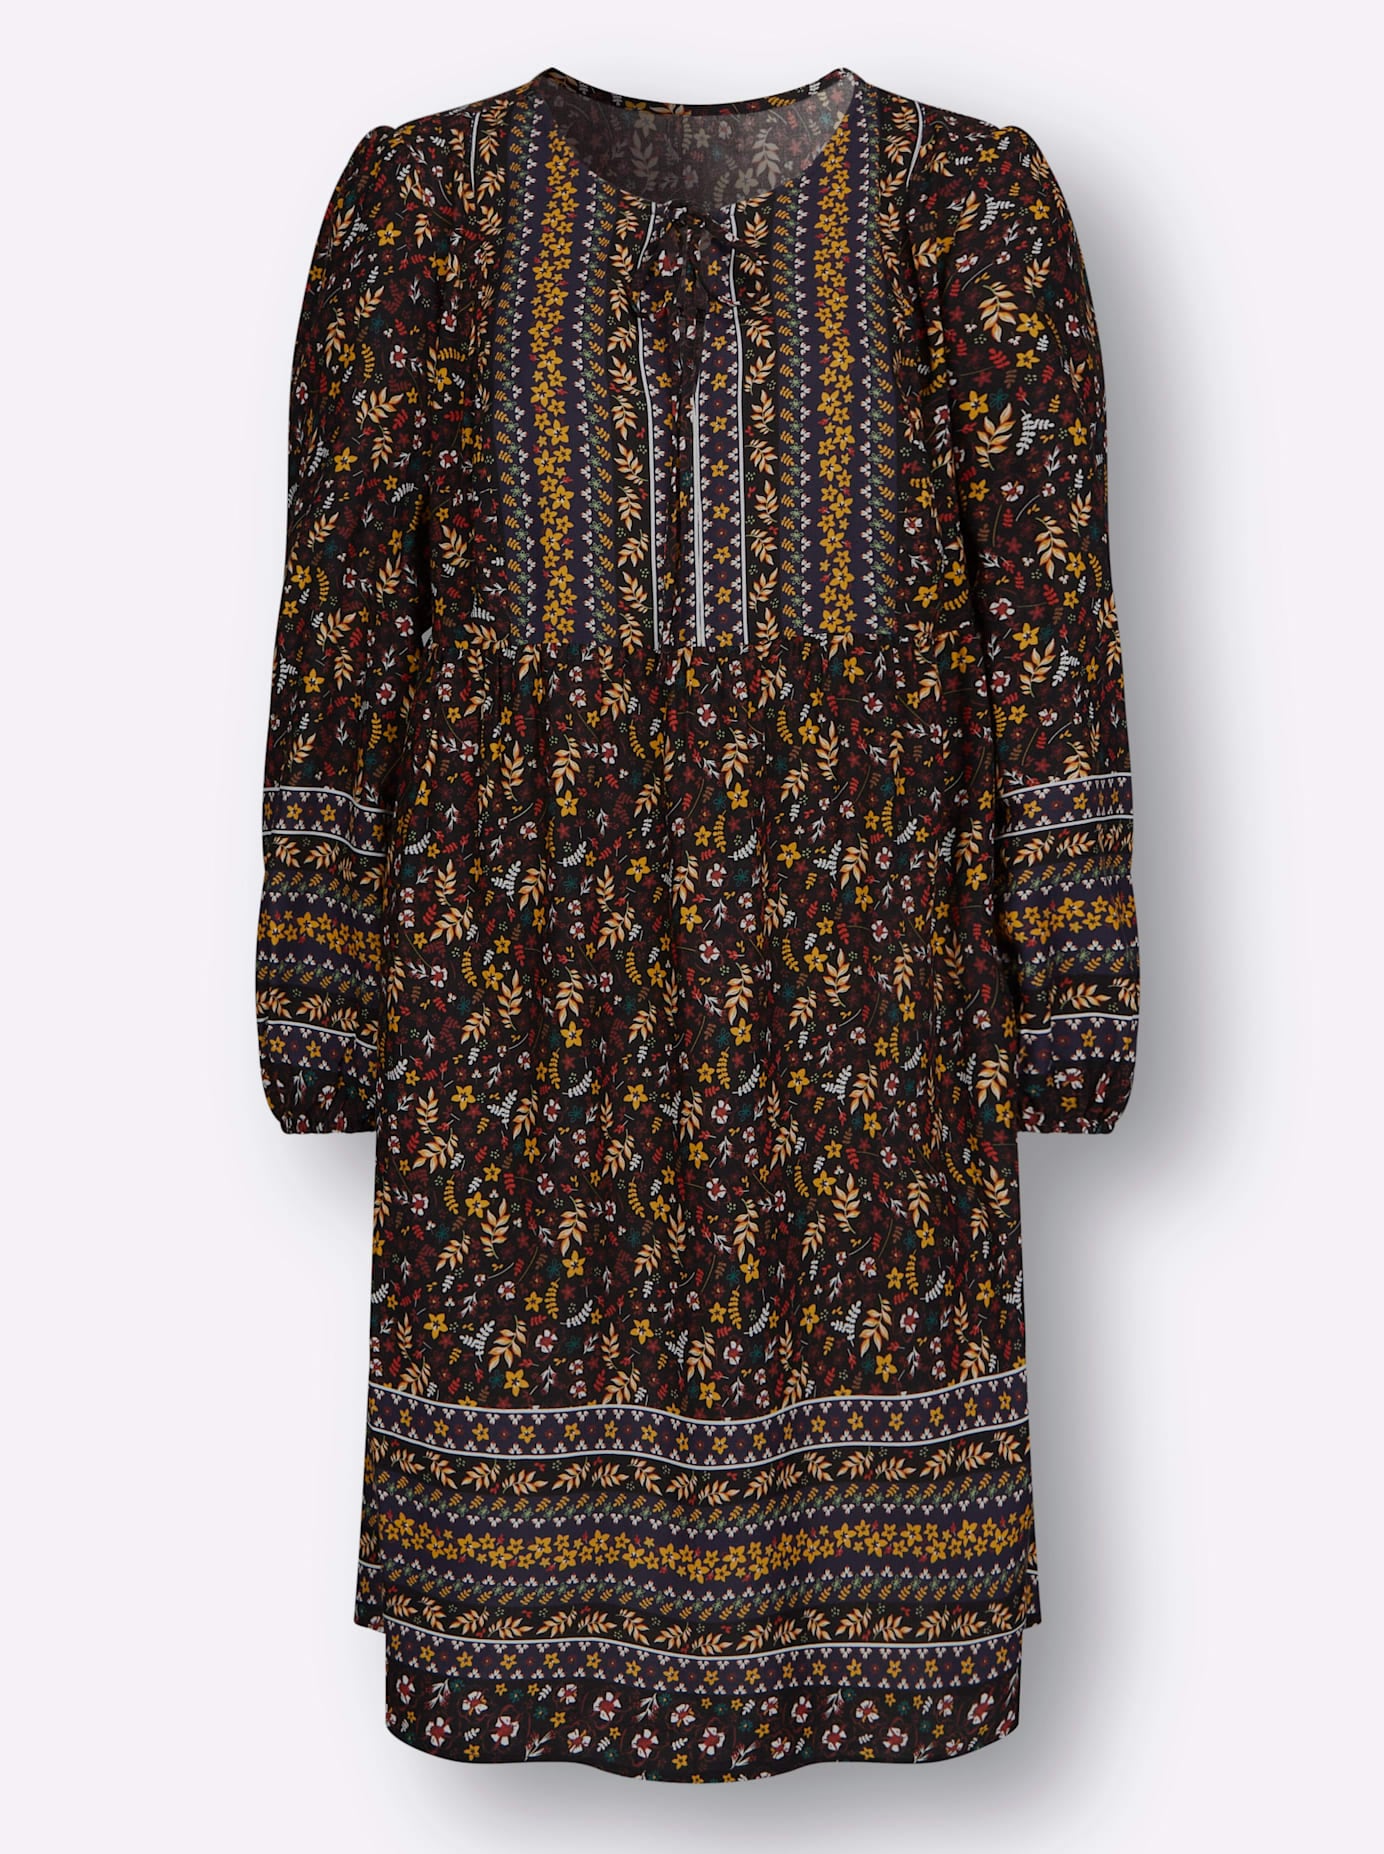 Shop im »Druck-Kleid« OTTO Tunikakleid Inspirationen Online